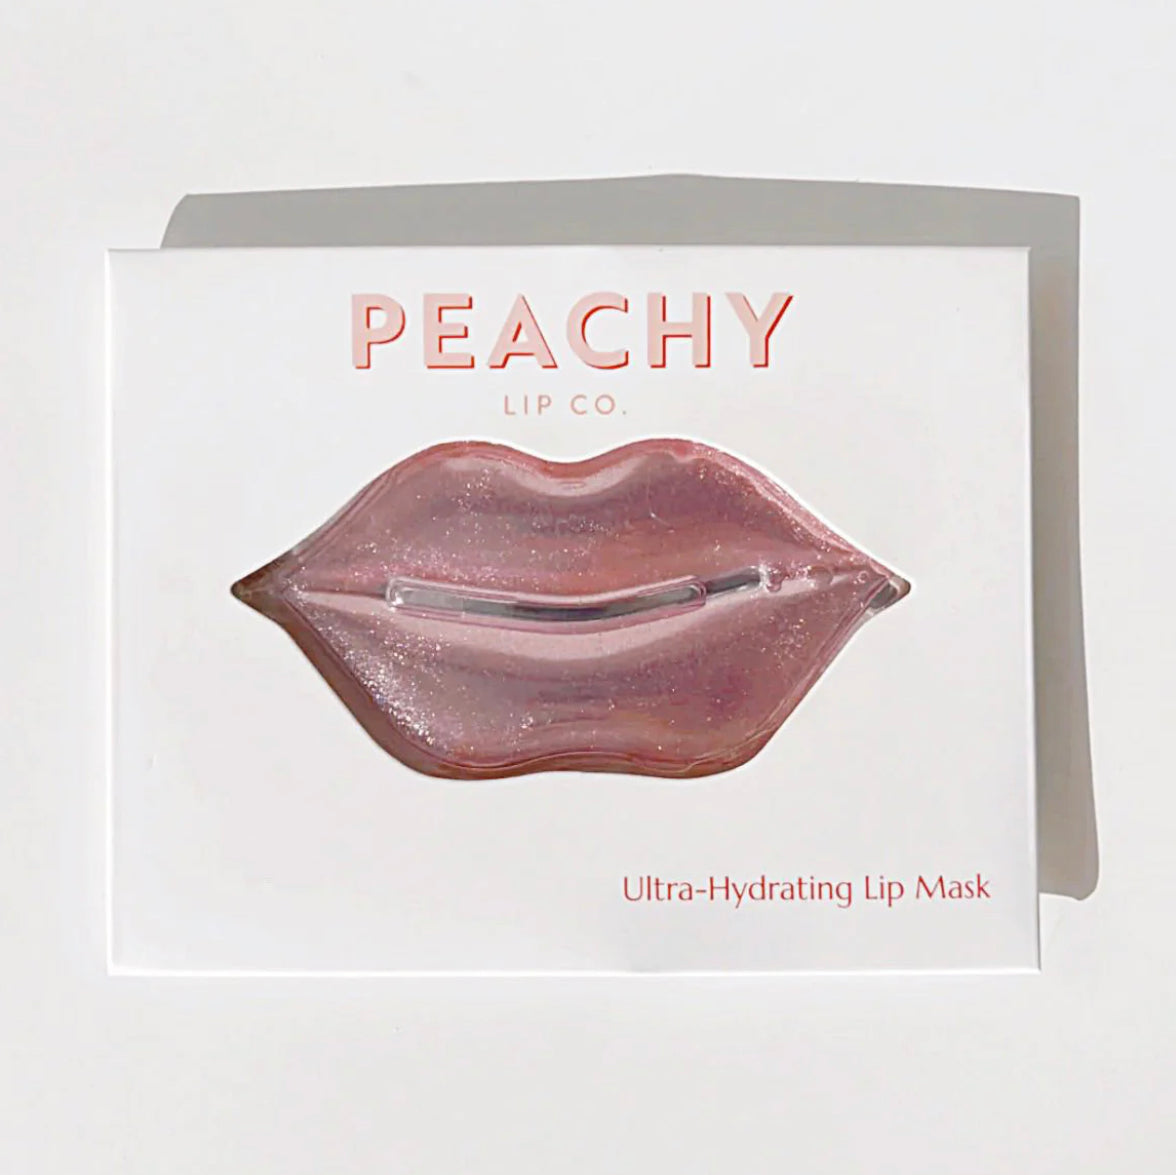 Ultra-Hydrating Lip Mask